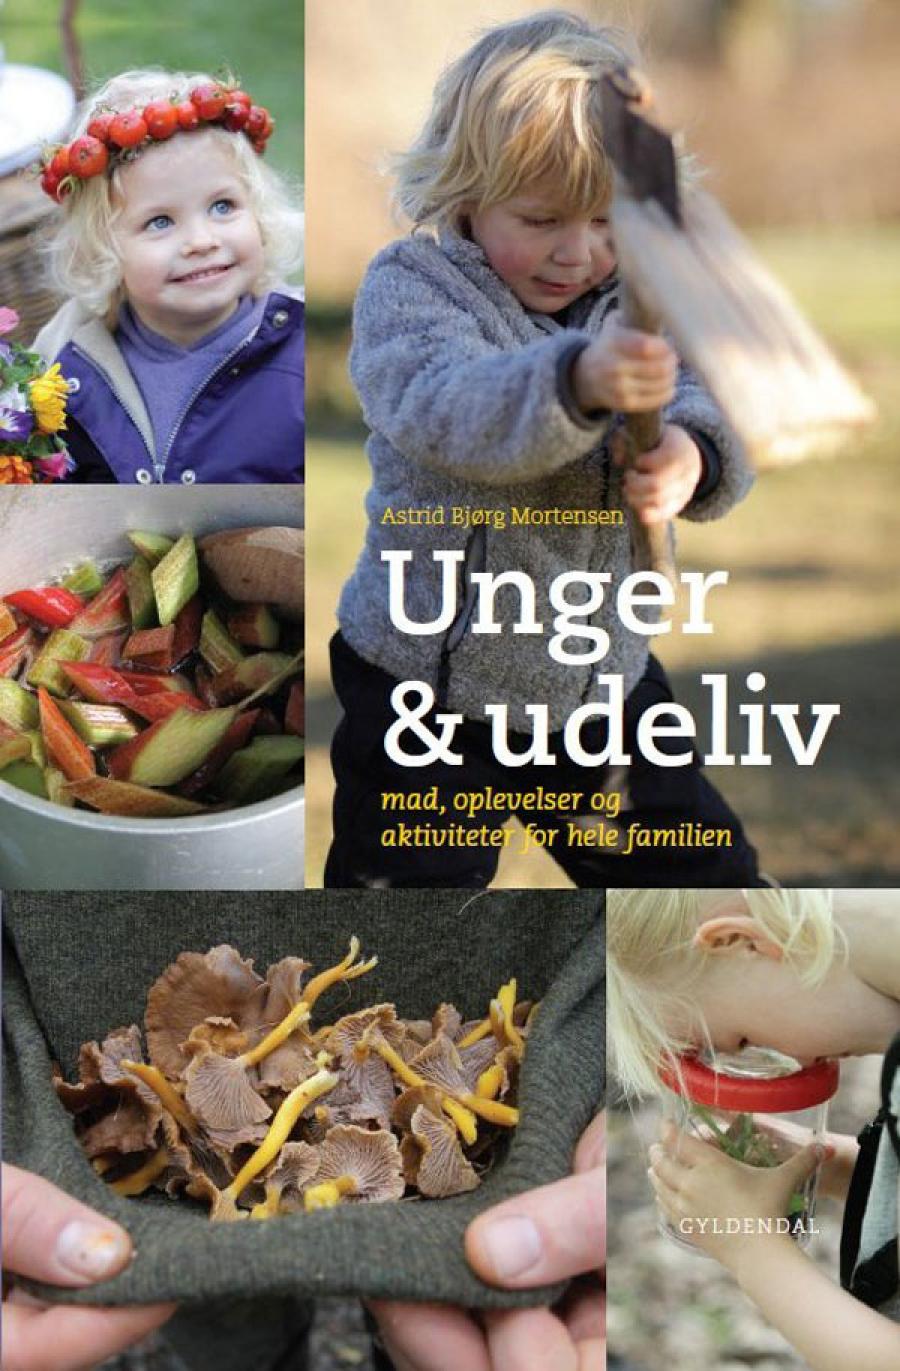 Billede af bogen Unger og udeliv af Astrid Bjørg Mortensen